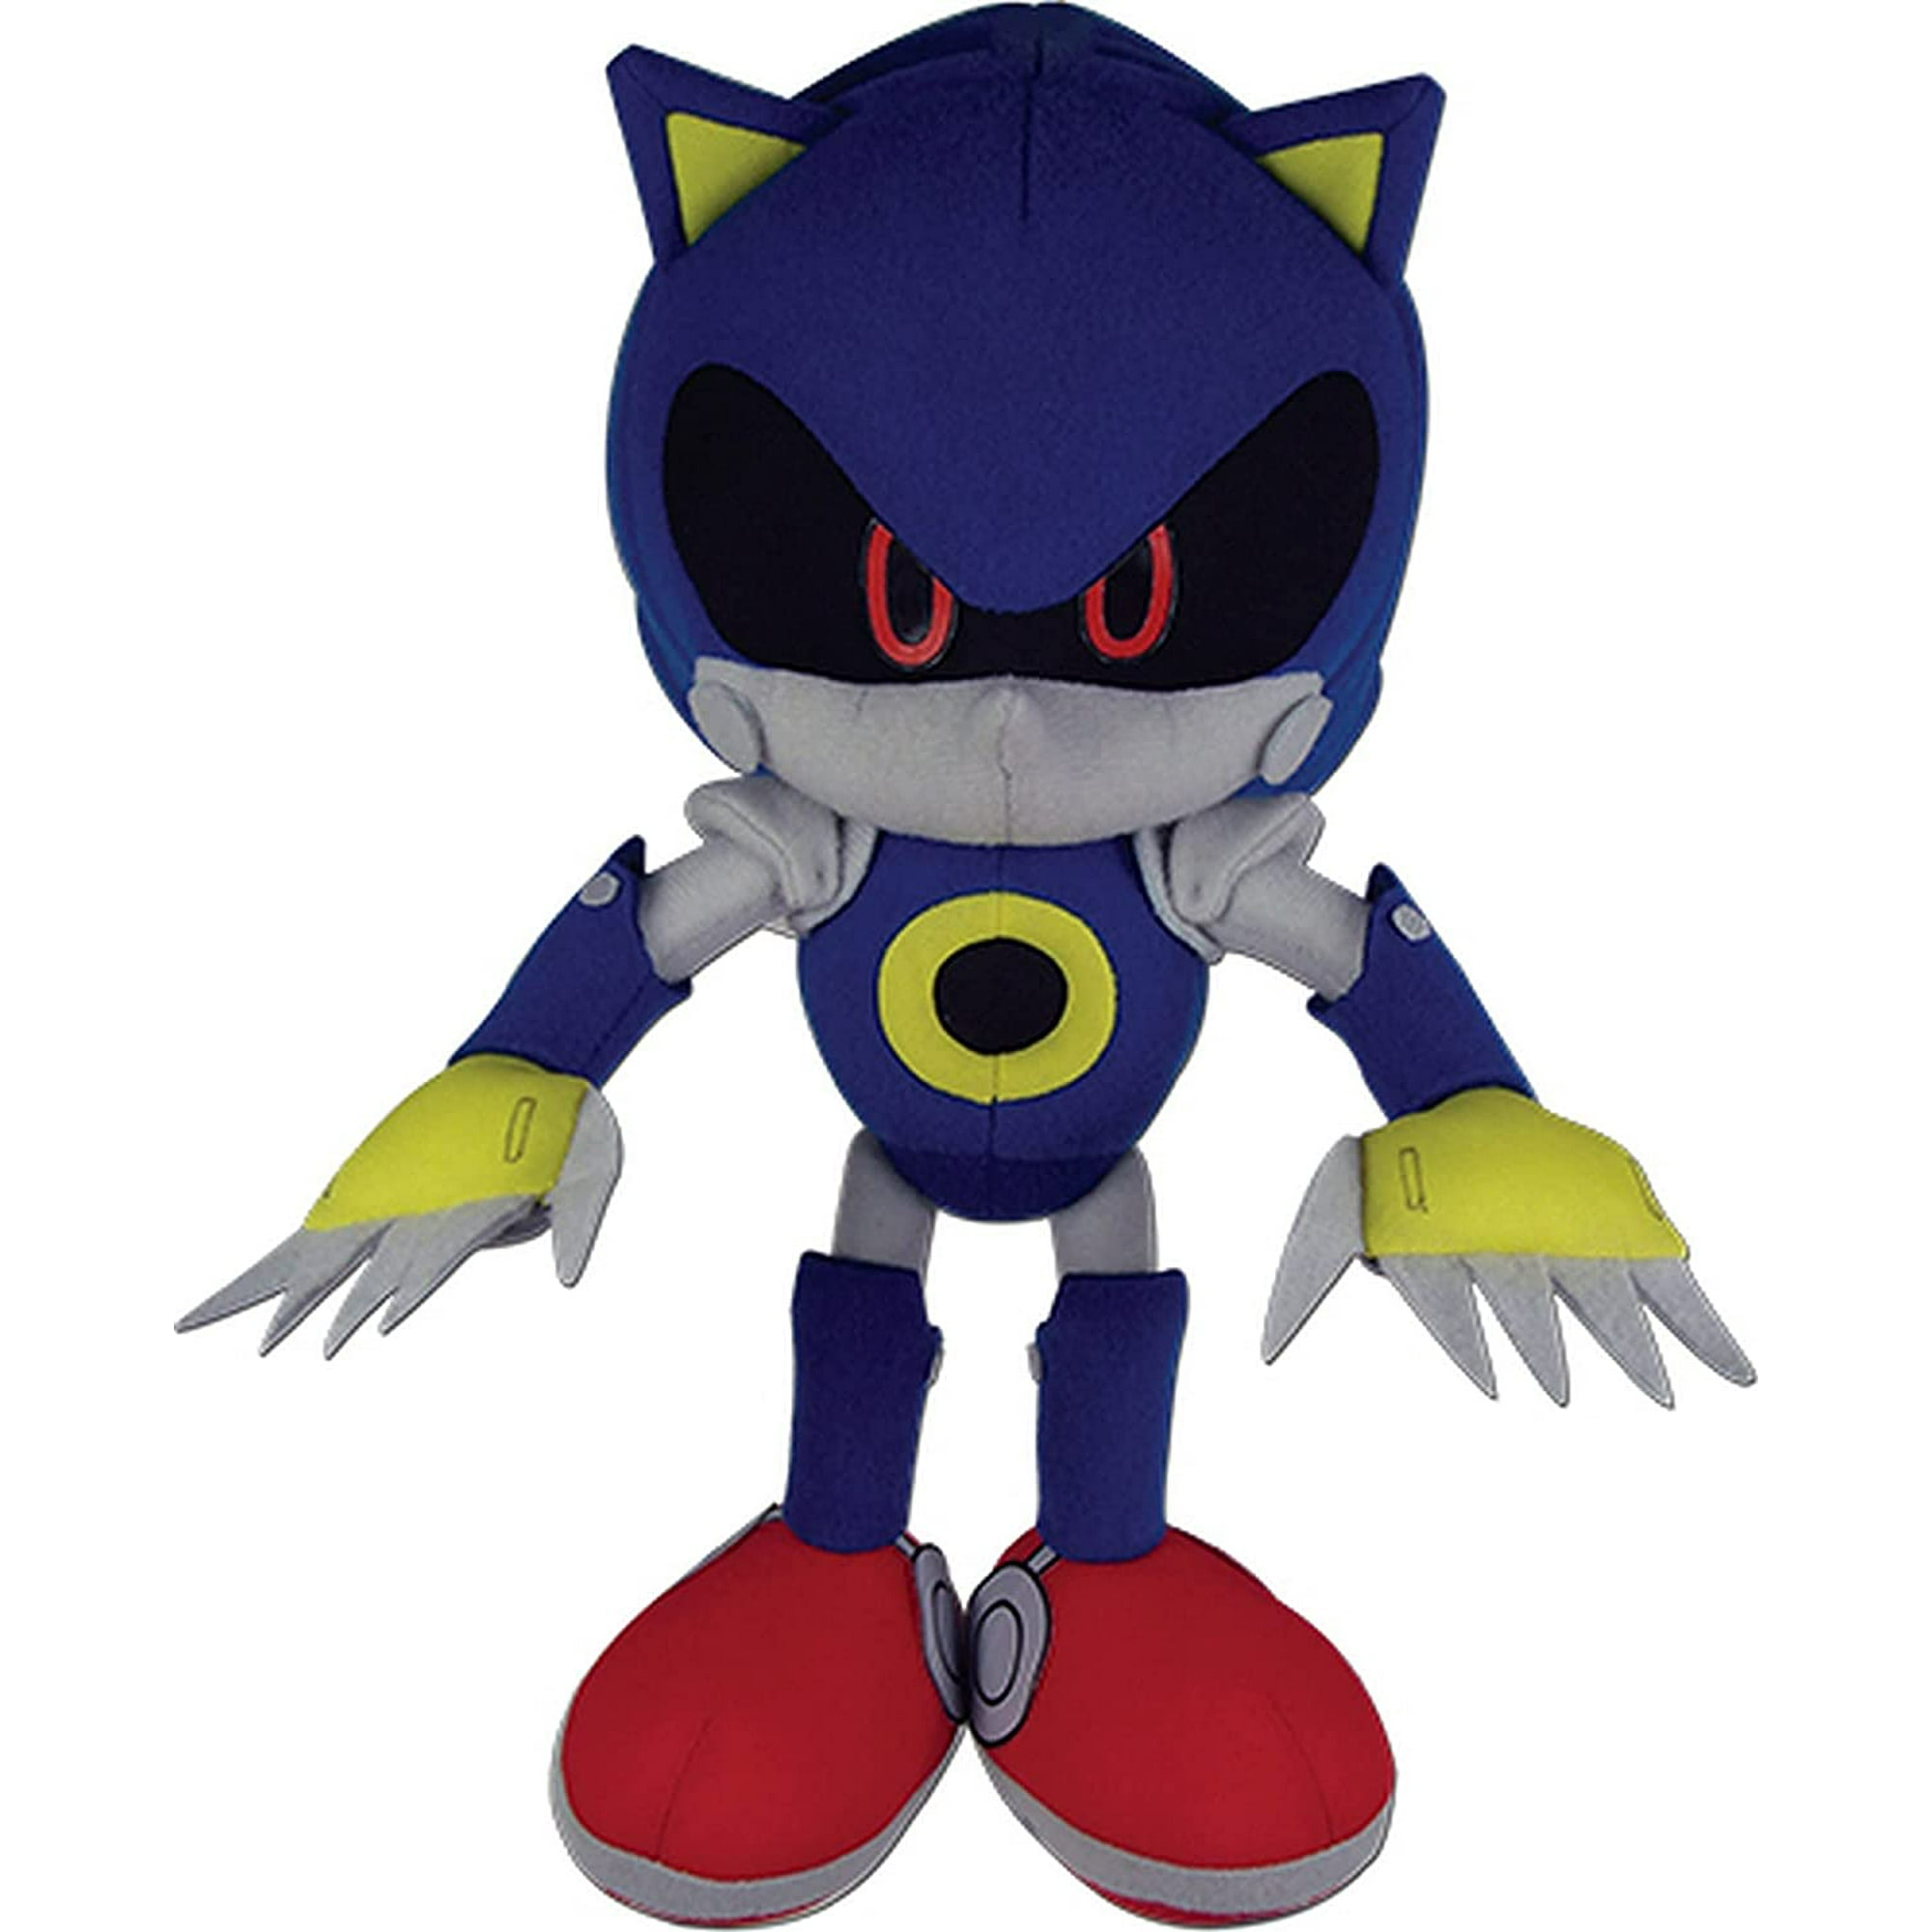 Géneric Peluche Sonic de metal de 11.8 pulgadas + 55 calcomanías de Sonic,  muñeco de peluche sónico de metal, figura de juguete para niños